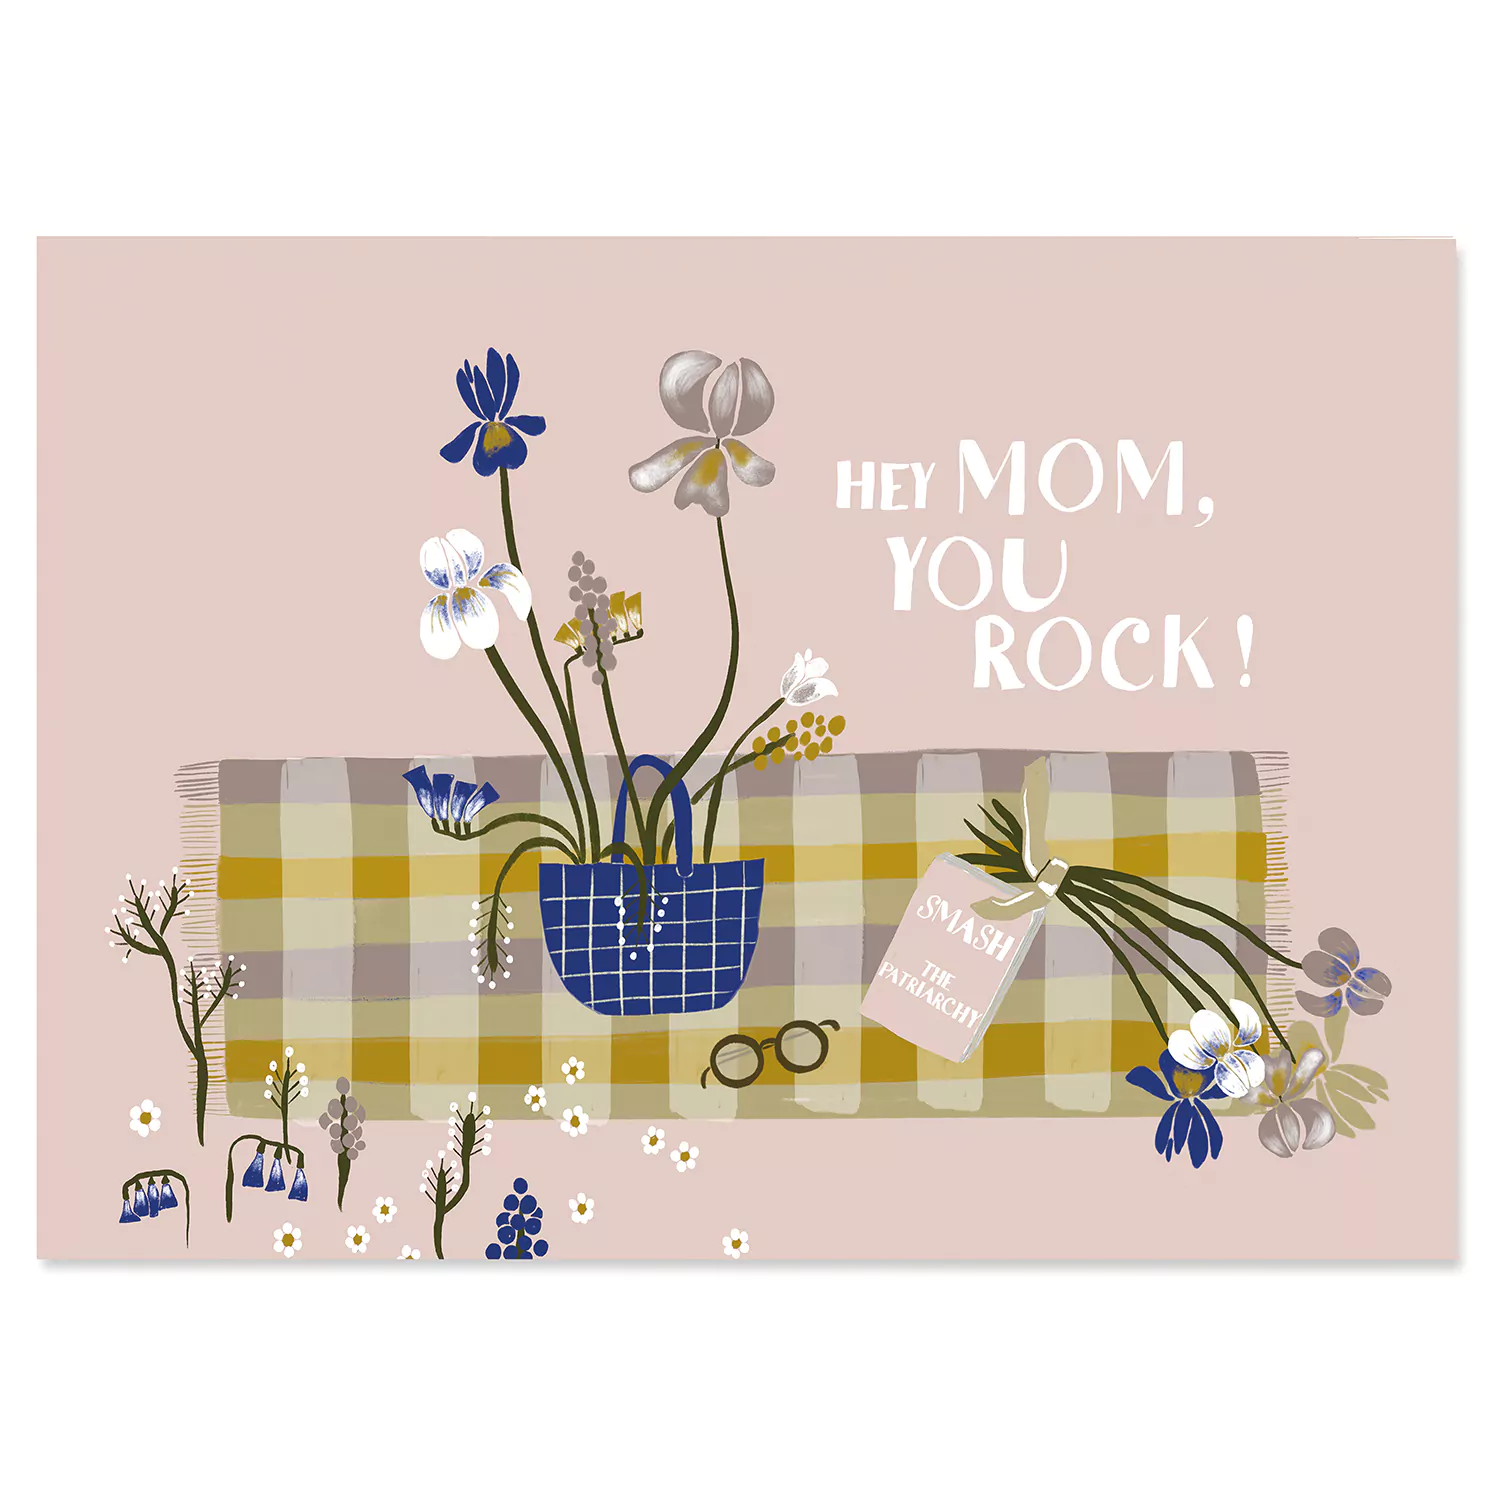 Moms rock postkarte holzschliffpappe